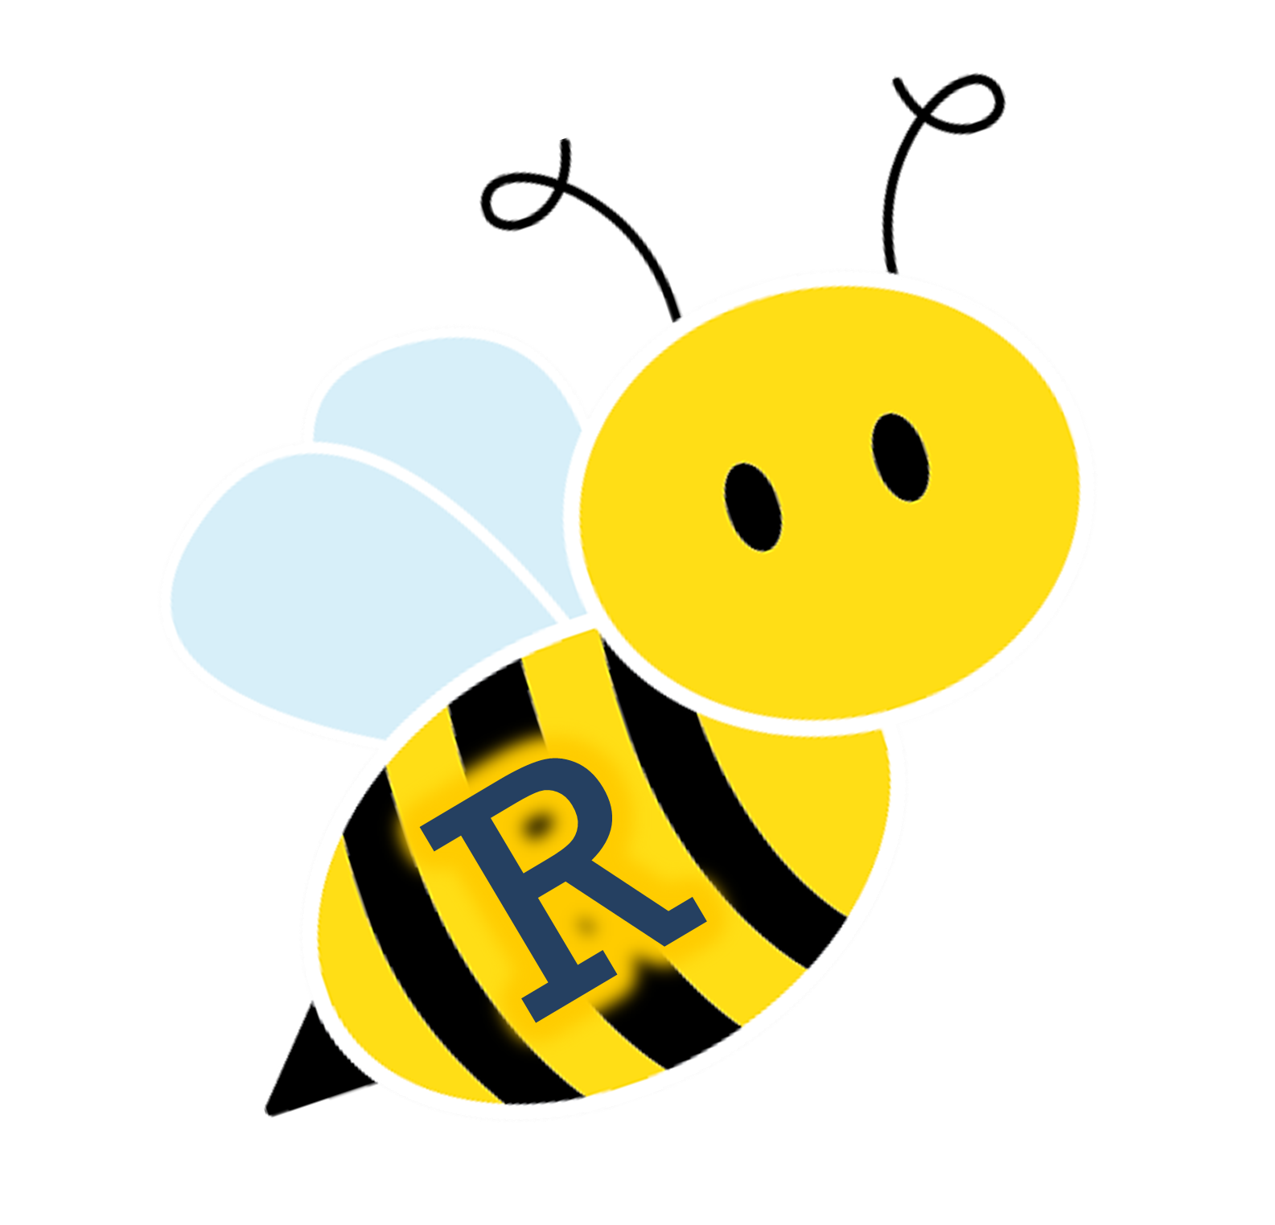 Bee spell bee